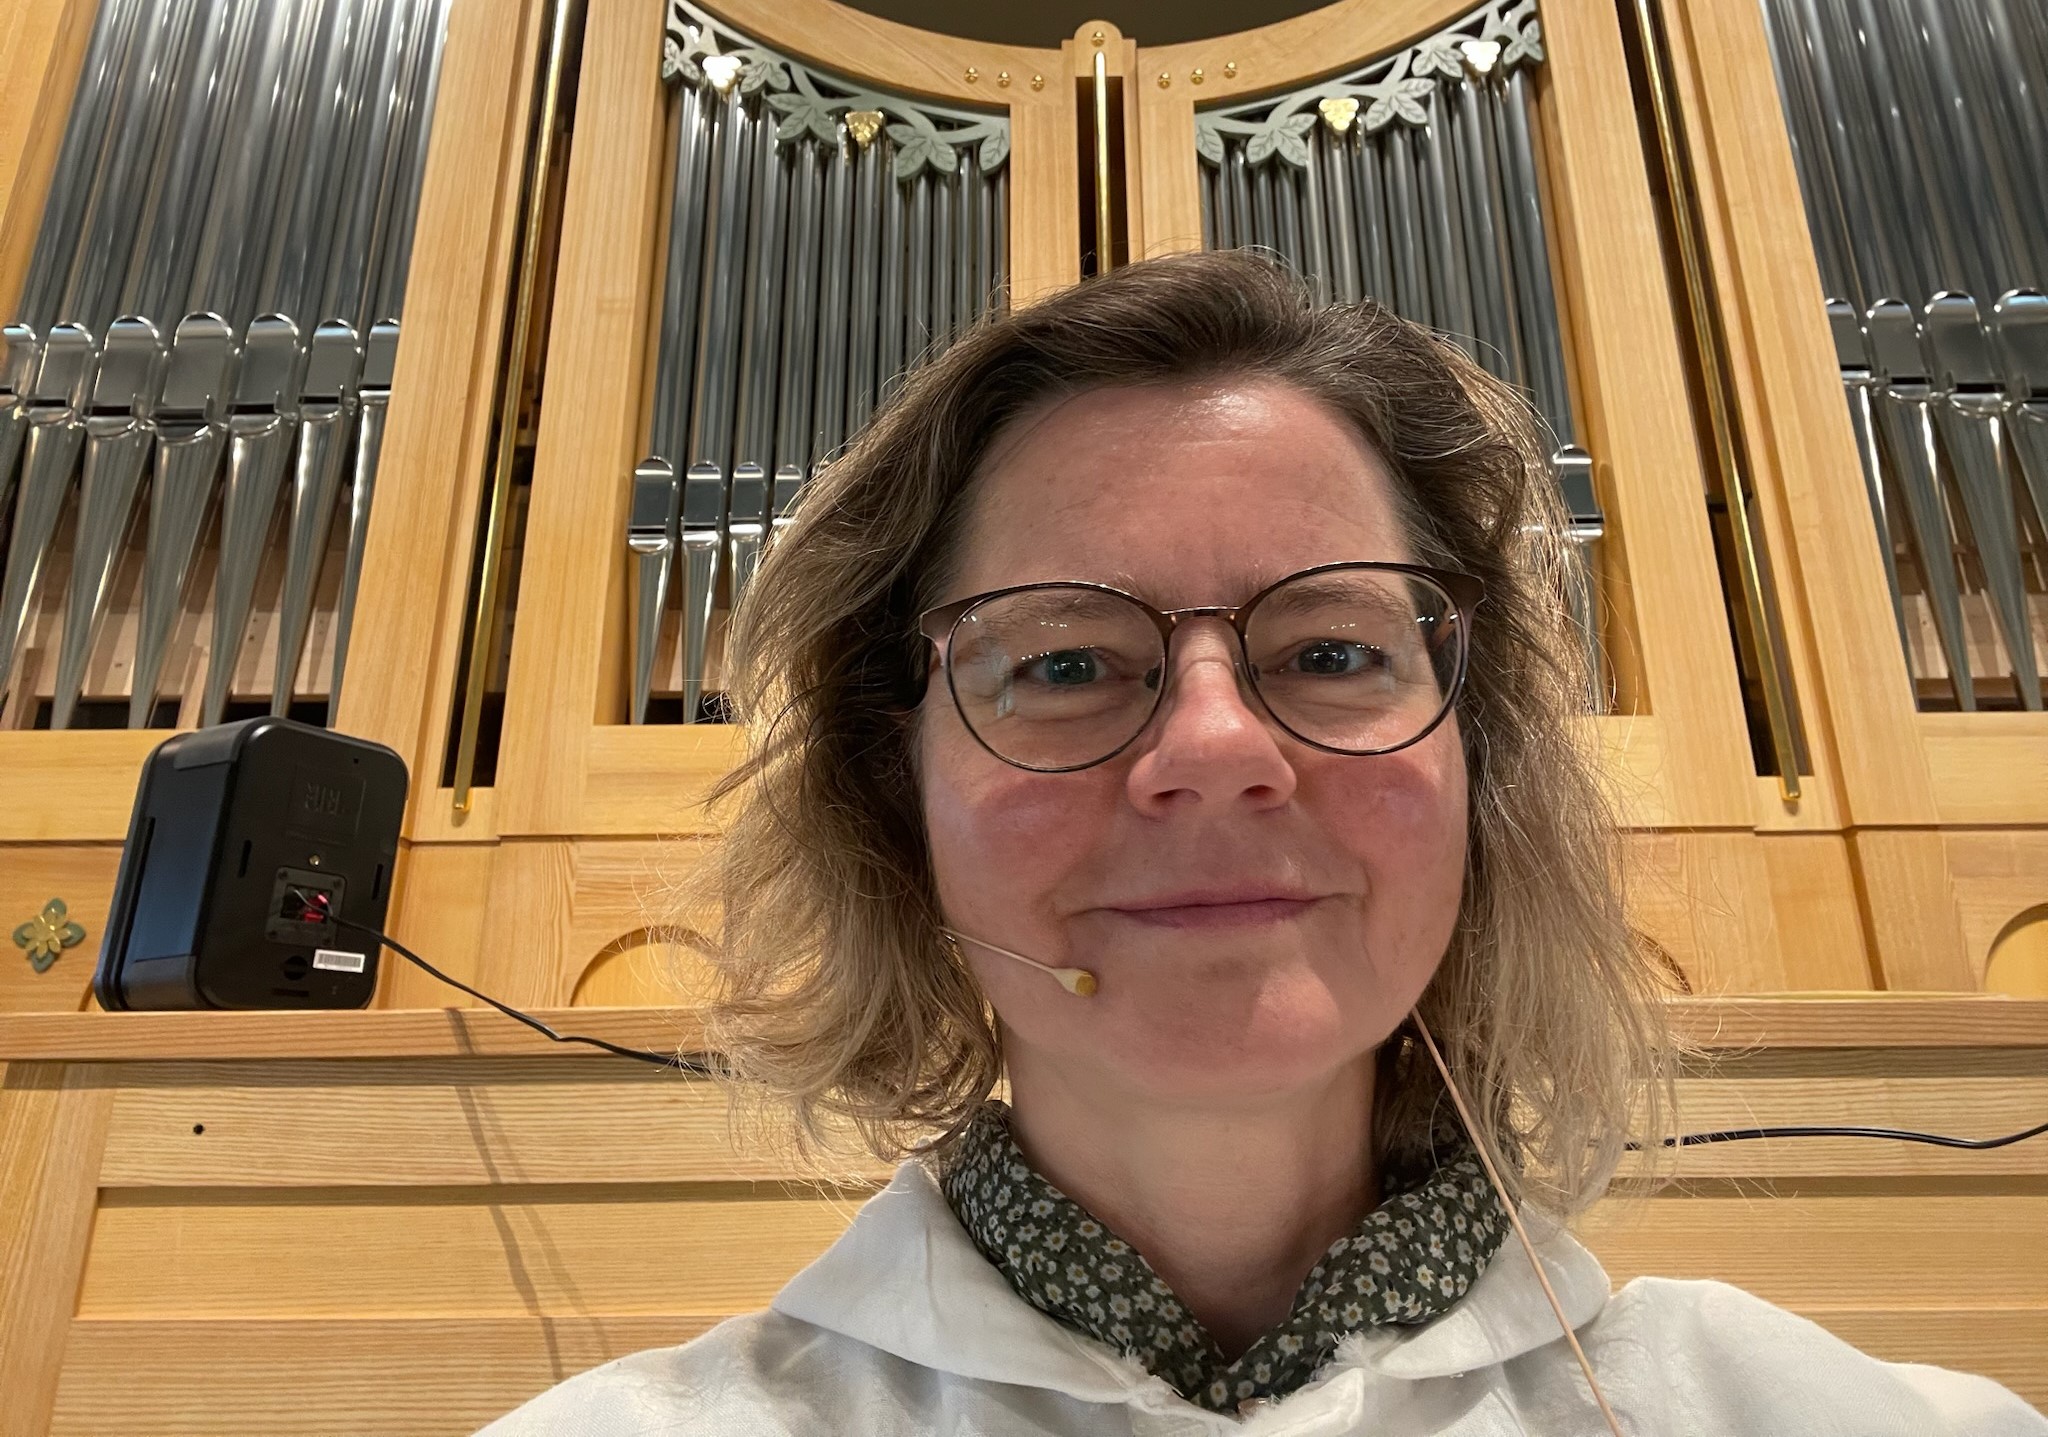 Kantor Unn Birgitte van der Hagen har invitert både unge og eldre virtuoser til å innvie kirkens nye orgel.